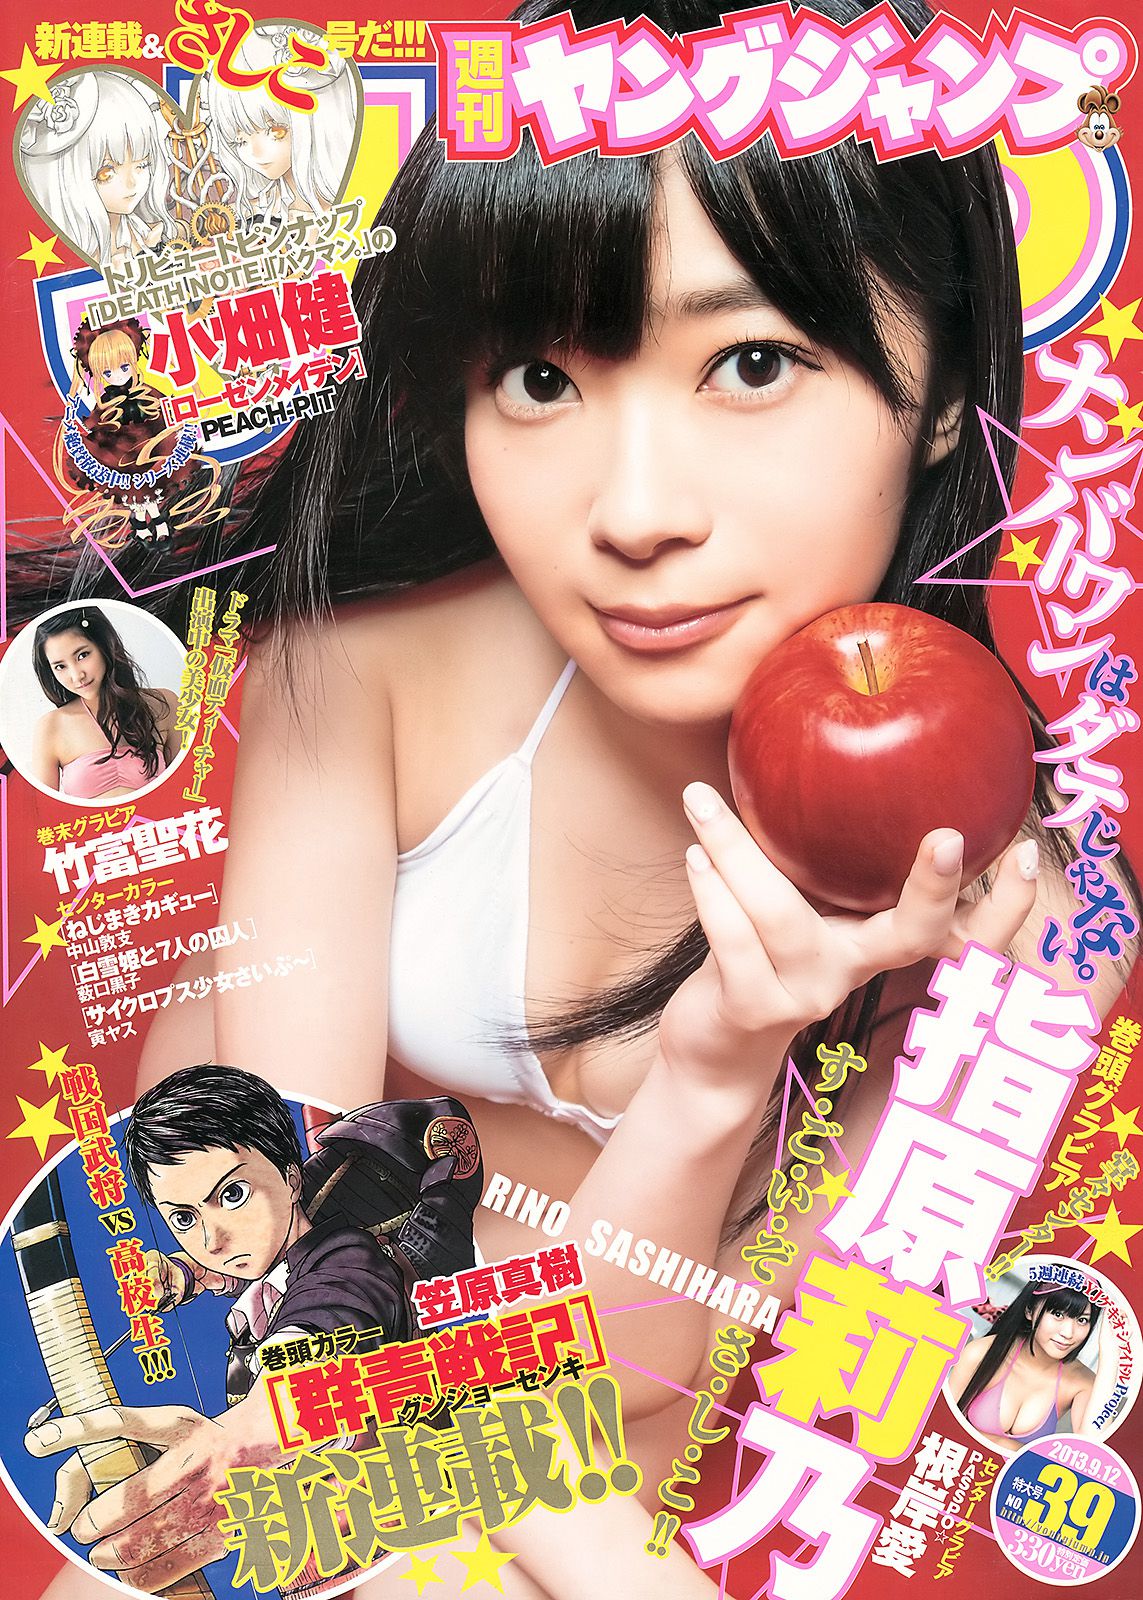 Rino Sashihara Ai Negishi Seika Taketomi [Weekly Young Jump] 2013 No.39 Photographie